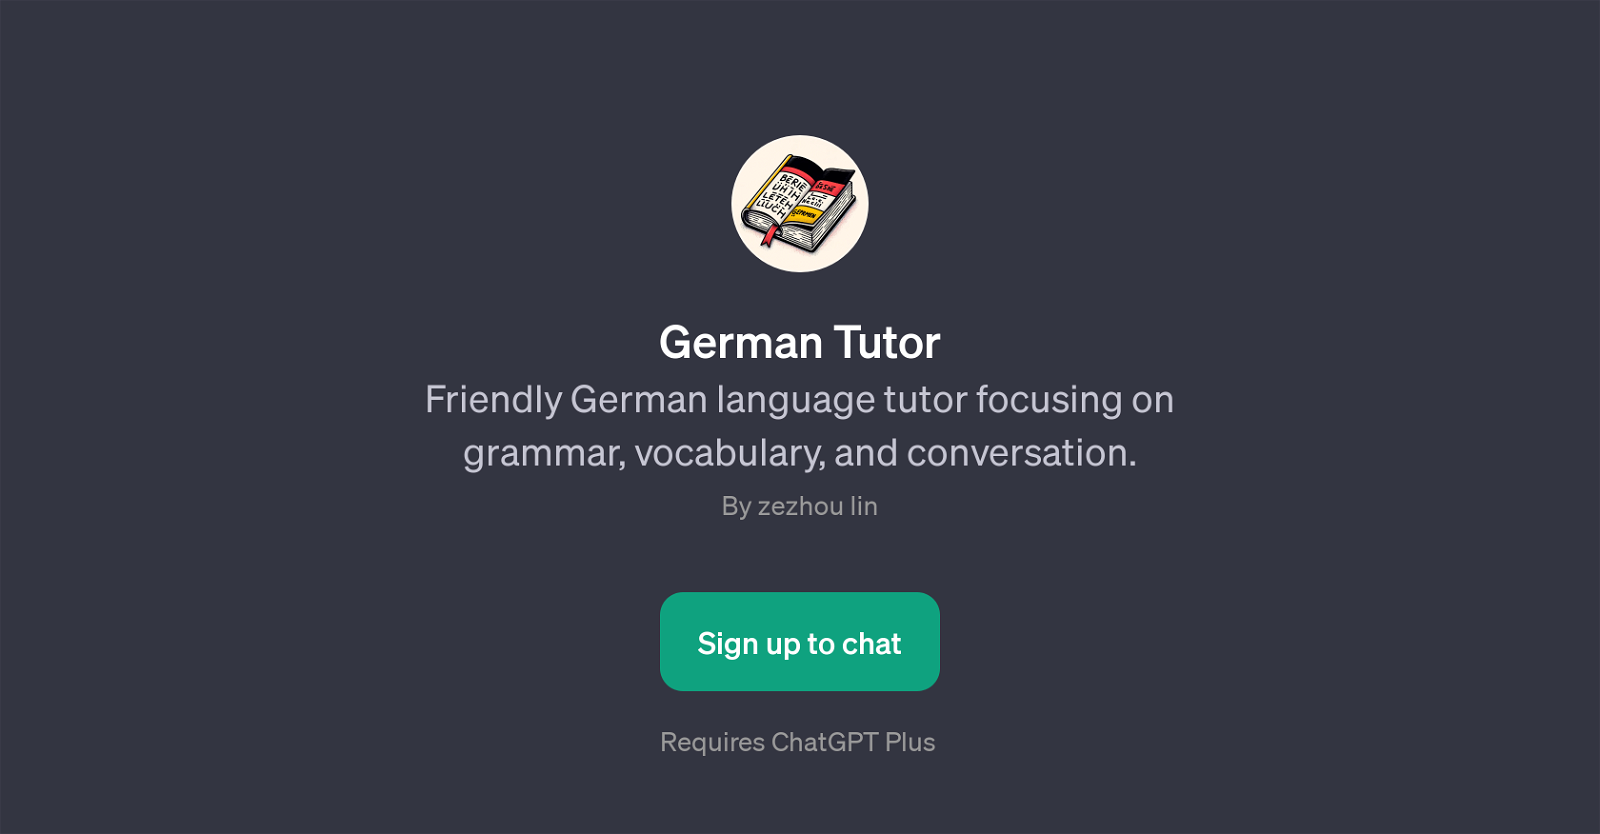 German Tutor website